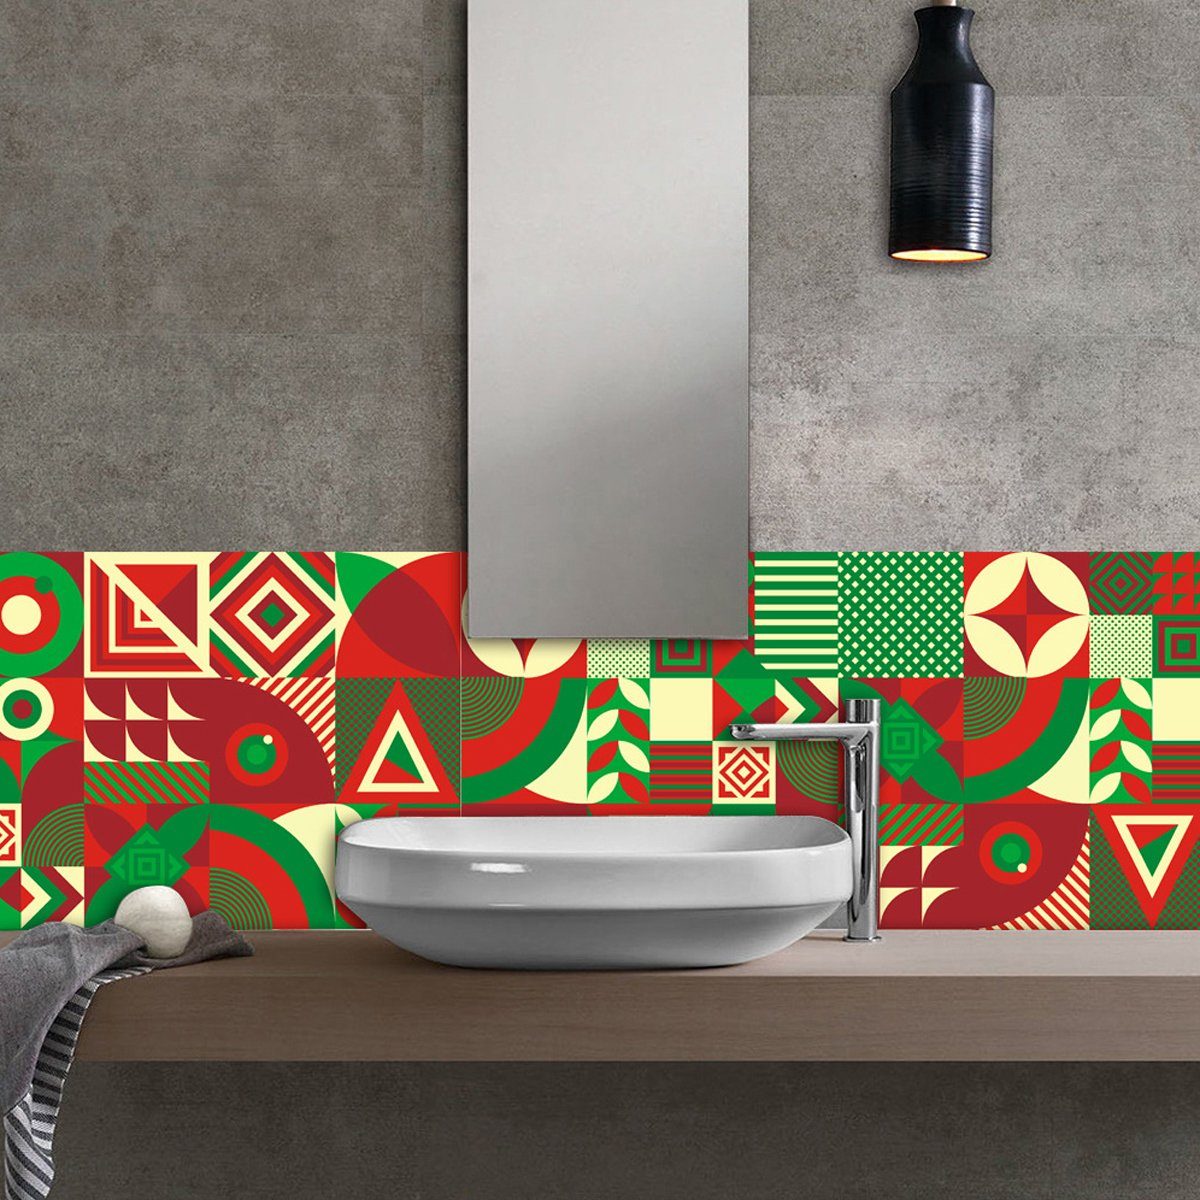 Deko Wanddekoration,für Fliesenaufkleber 3D-Wandpaneele für Rot Grün3 Badezimmer Jormftte Innen